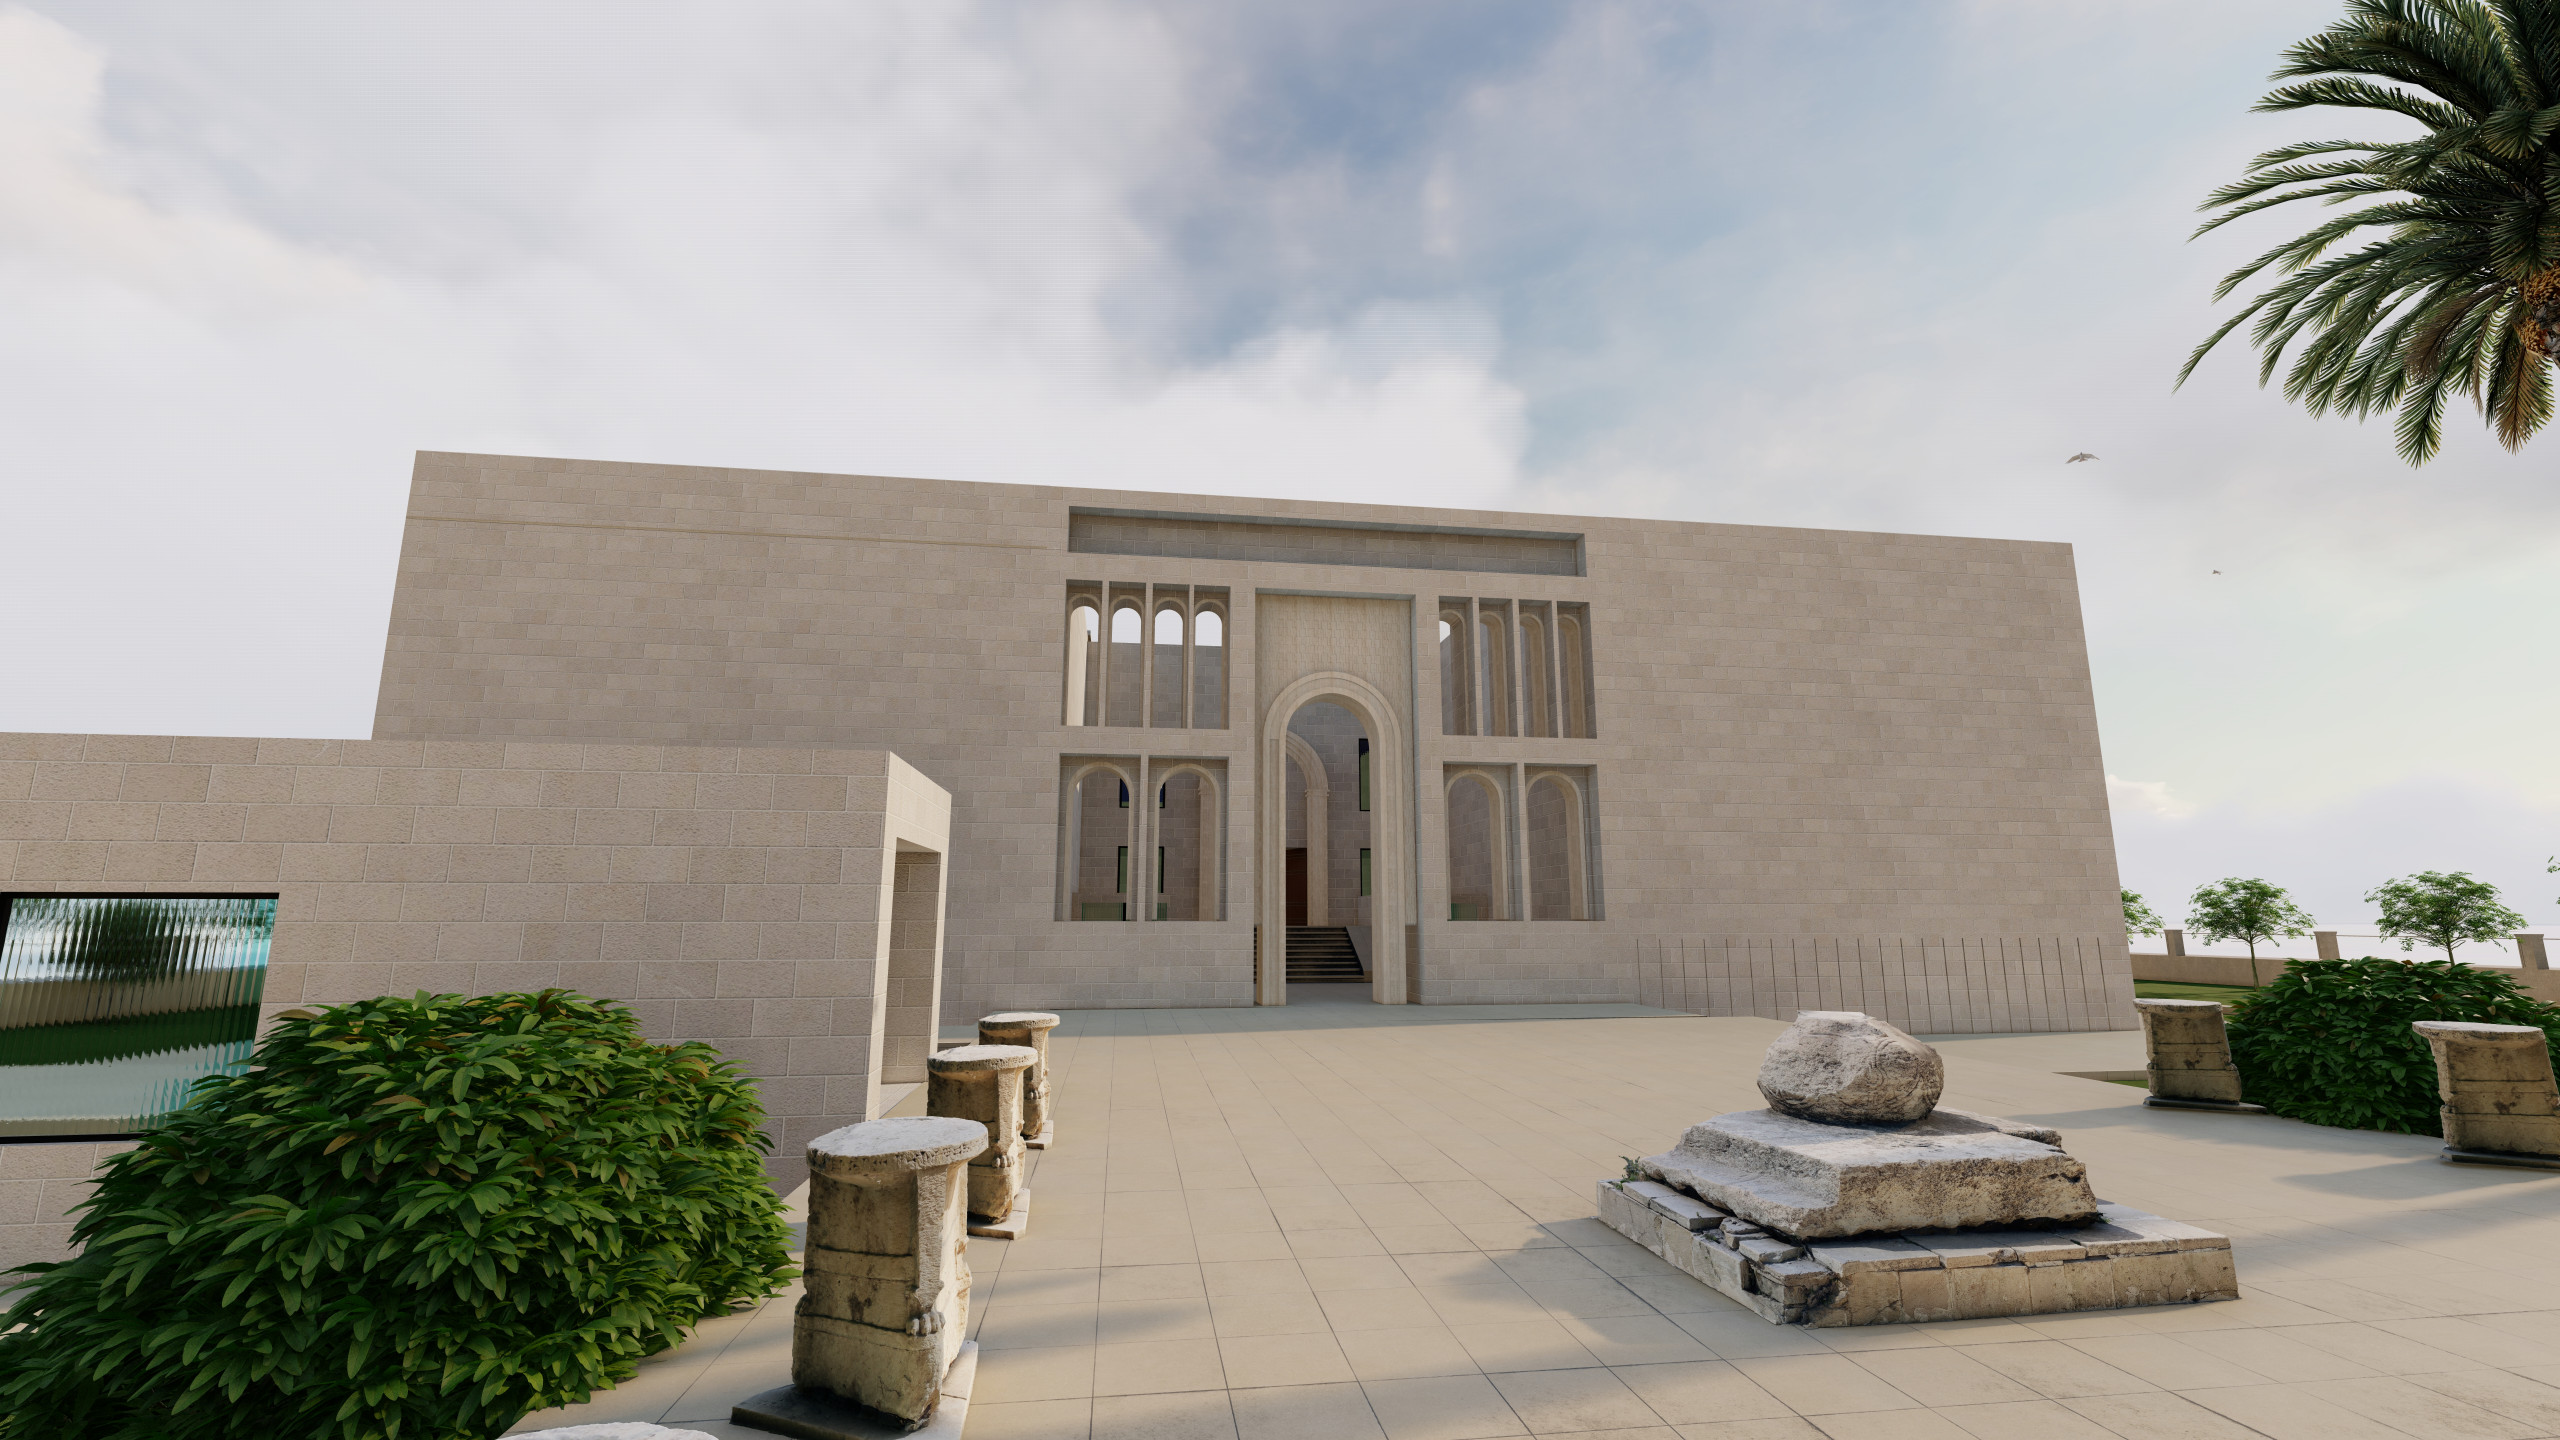 Explore Mosul Museum in 3D